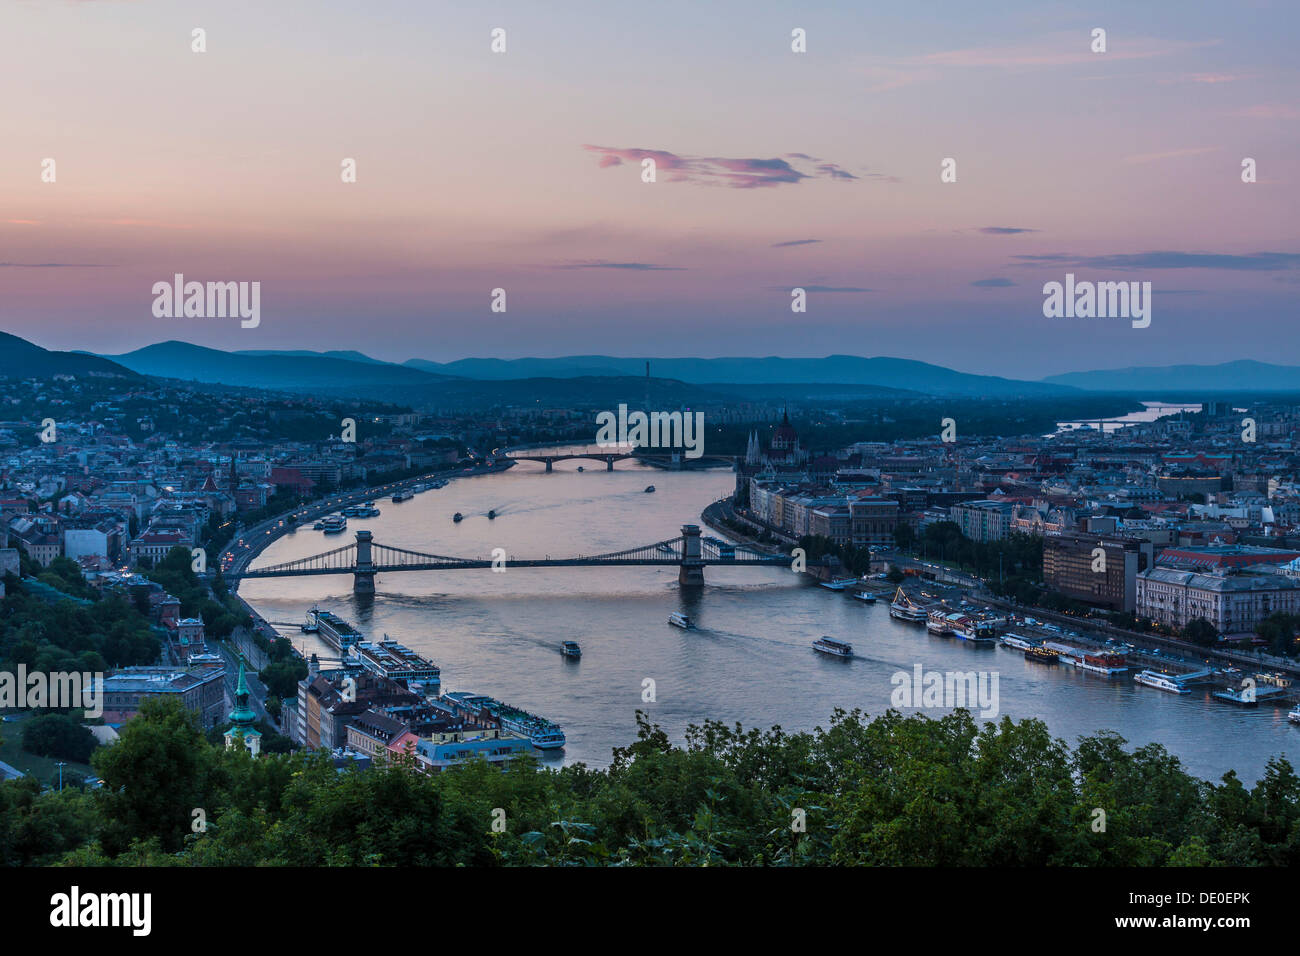 Vue depuis la citadelle jusqu'au Danube, Buda et Pest, les ponts sur le Danube, le Pont des chaînes à l'avant, le pont à l'arrière Banque D'Images